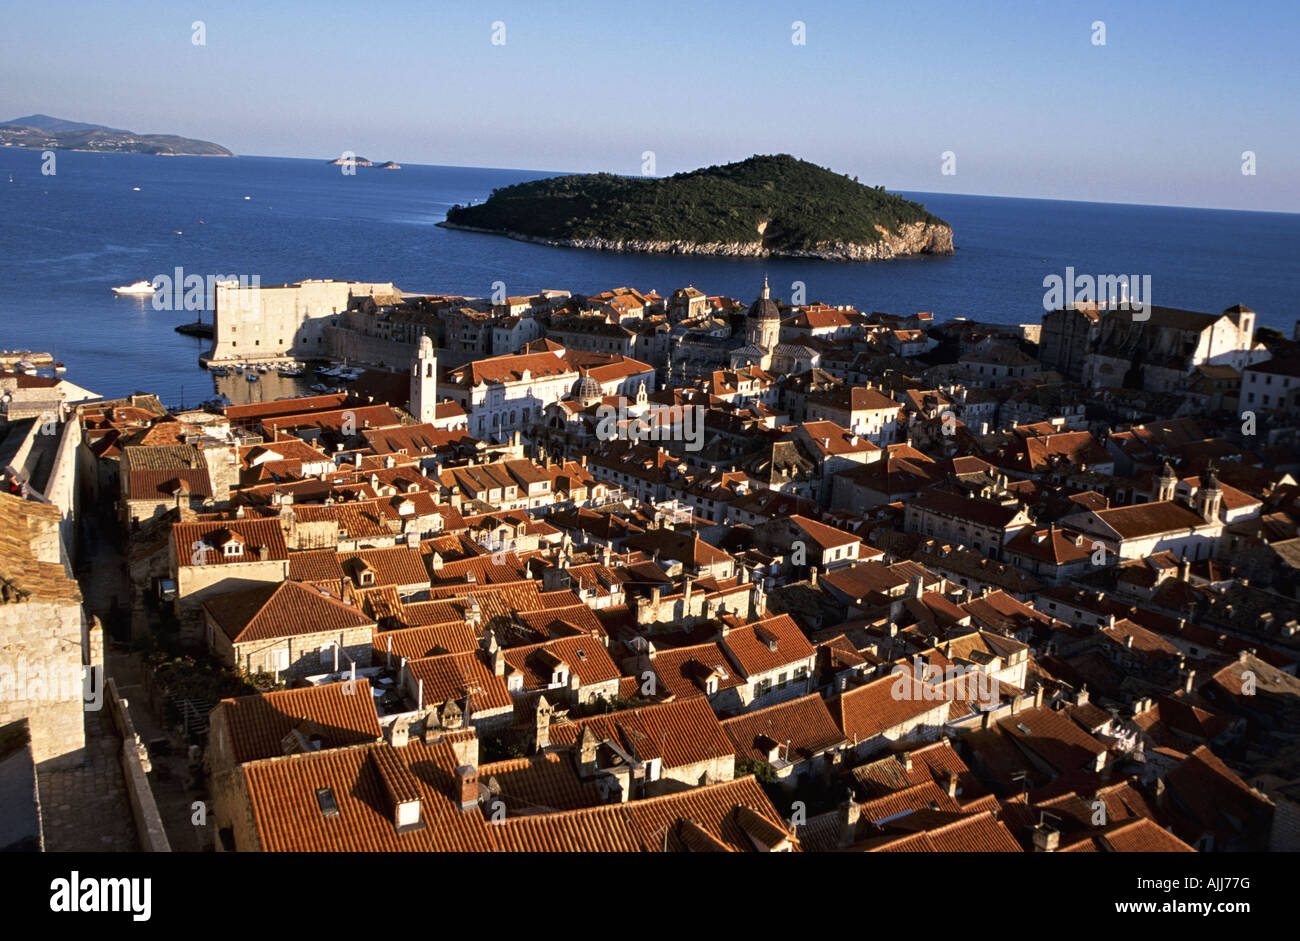 Fernsehreihe Dalmatien Dubrovnik - Altstadt von Dubrovnik | Kroatien-Dalmatien-Dubrovnik - Altstadt von Dubrovnik Stockfoto